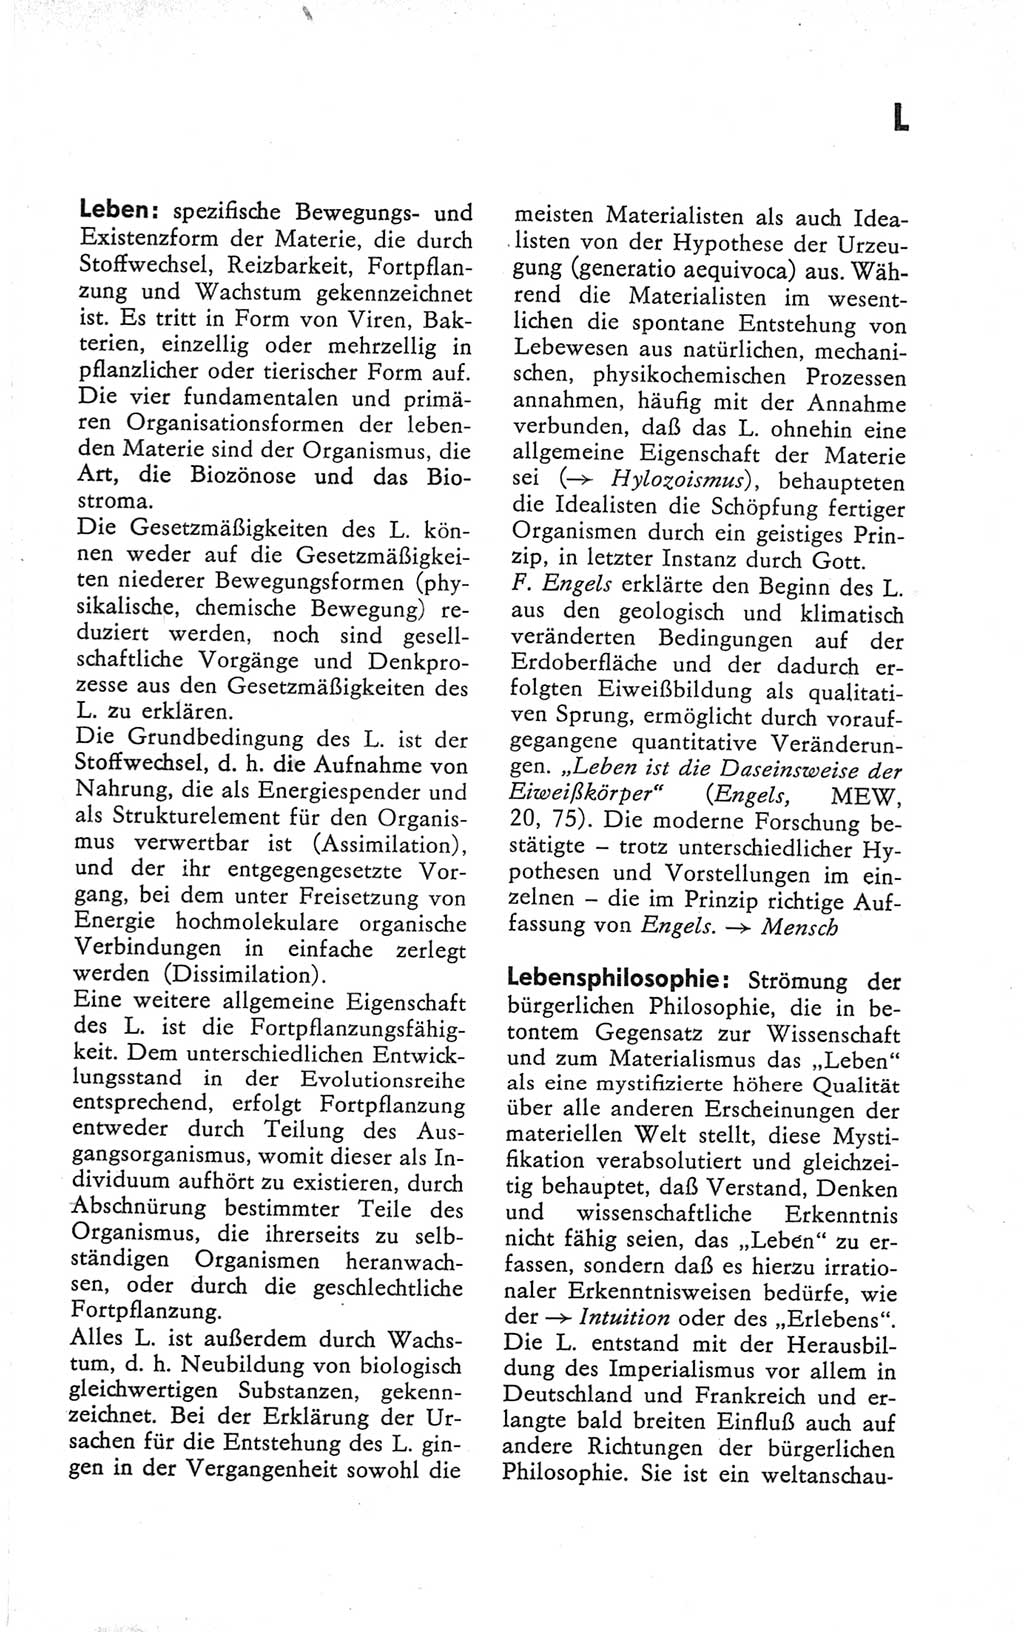 Kleines Wörterbuch der marxistisch-leninistischen Philosophie [Deutsche Demokratische Republik (DDR)] 1979, Seite 191 (Kl. Wb. ML Phil. DDR 1979, S. 191)